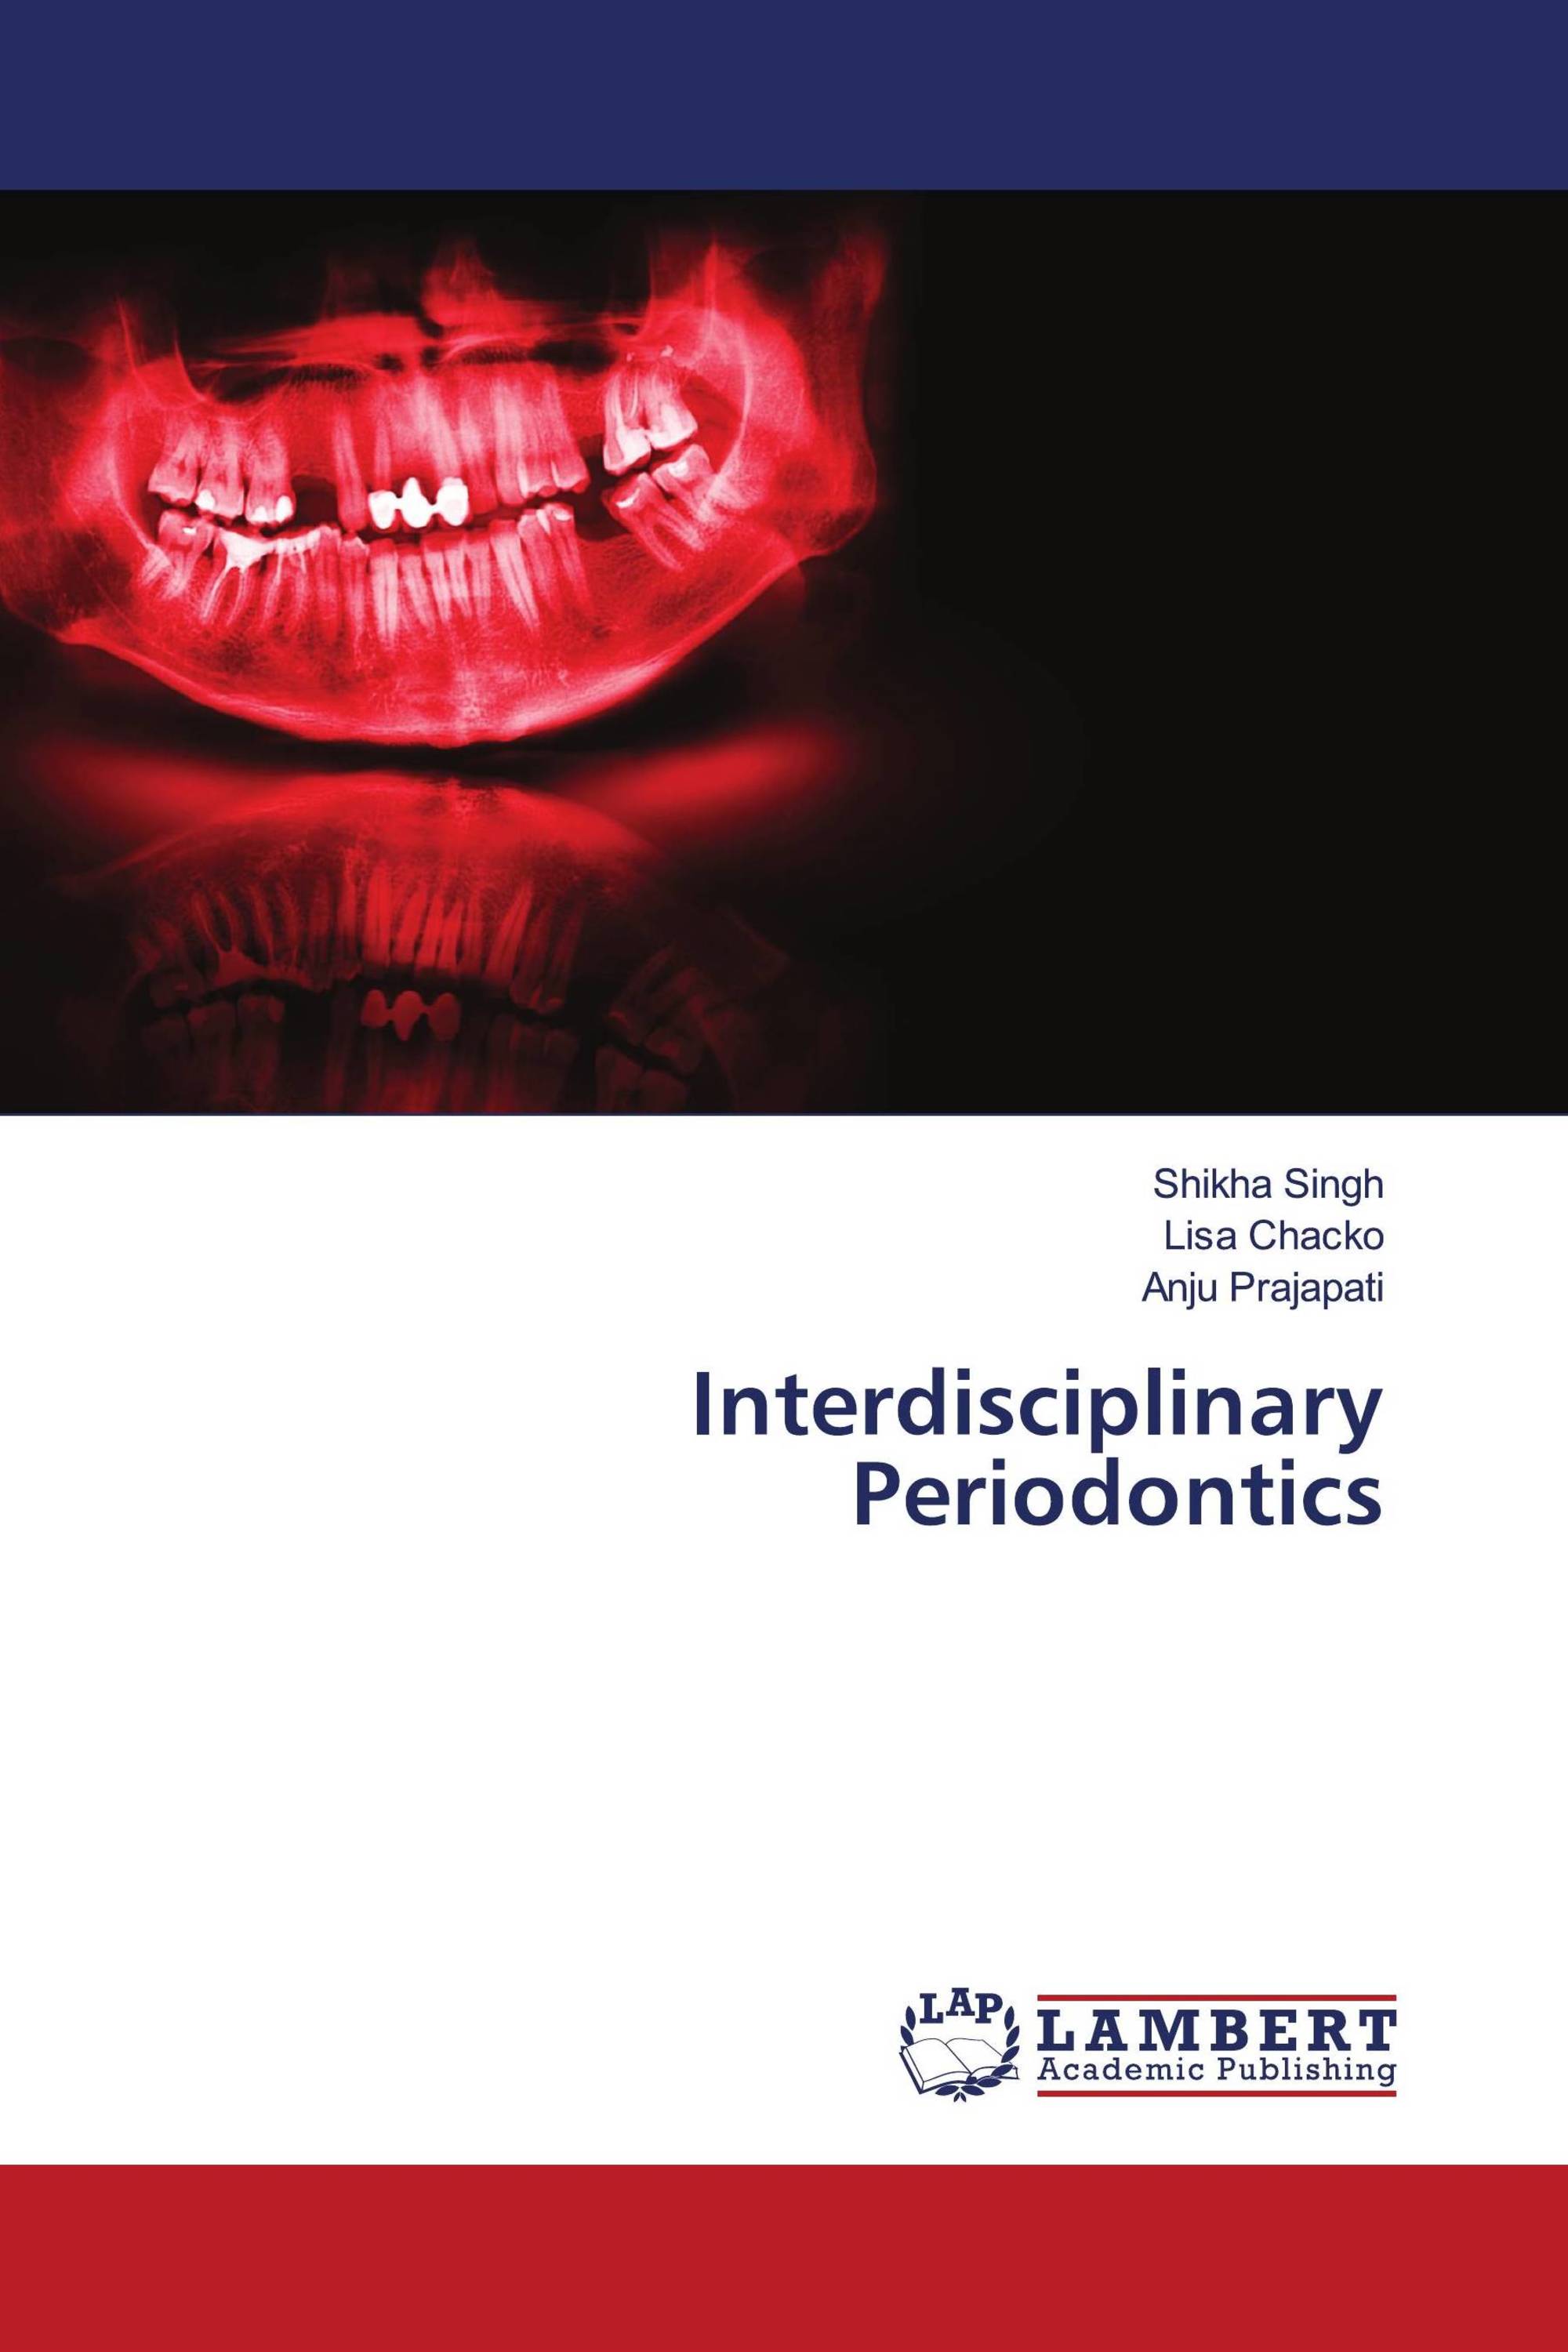 thesis topics periodontics